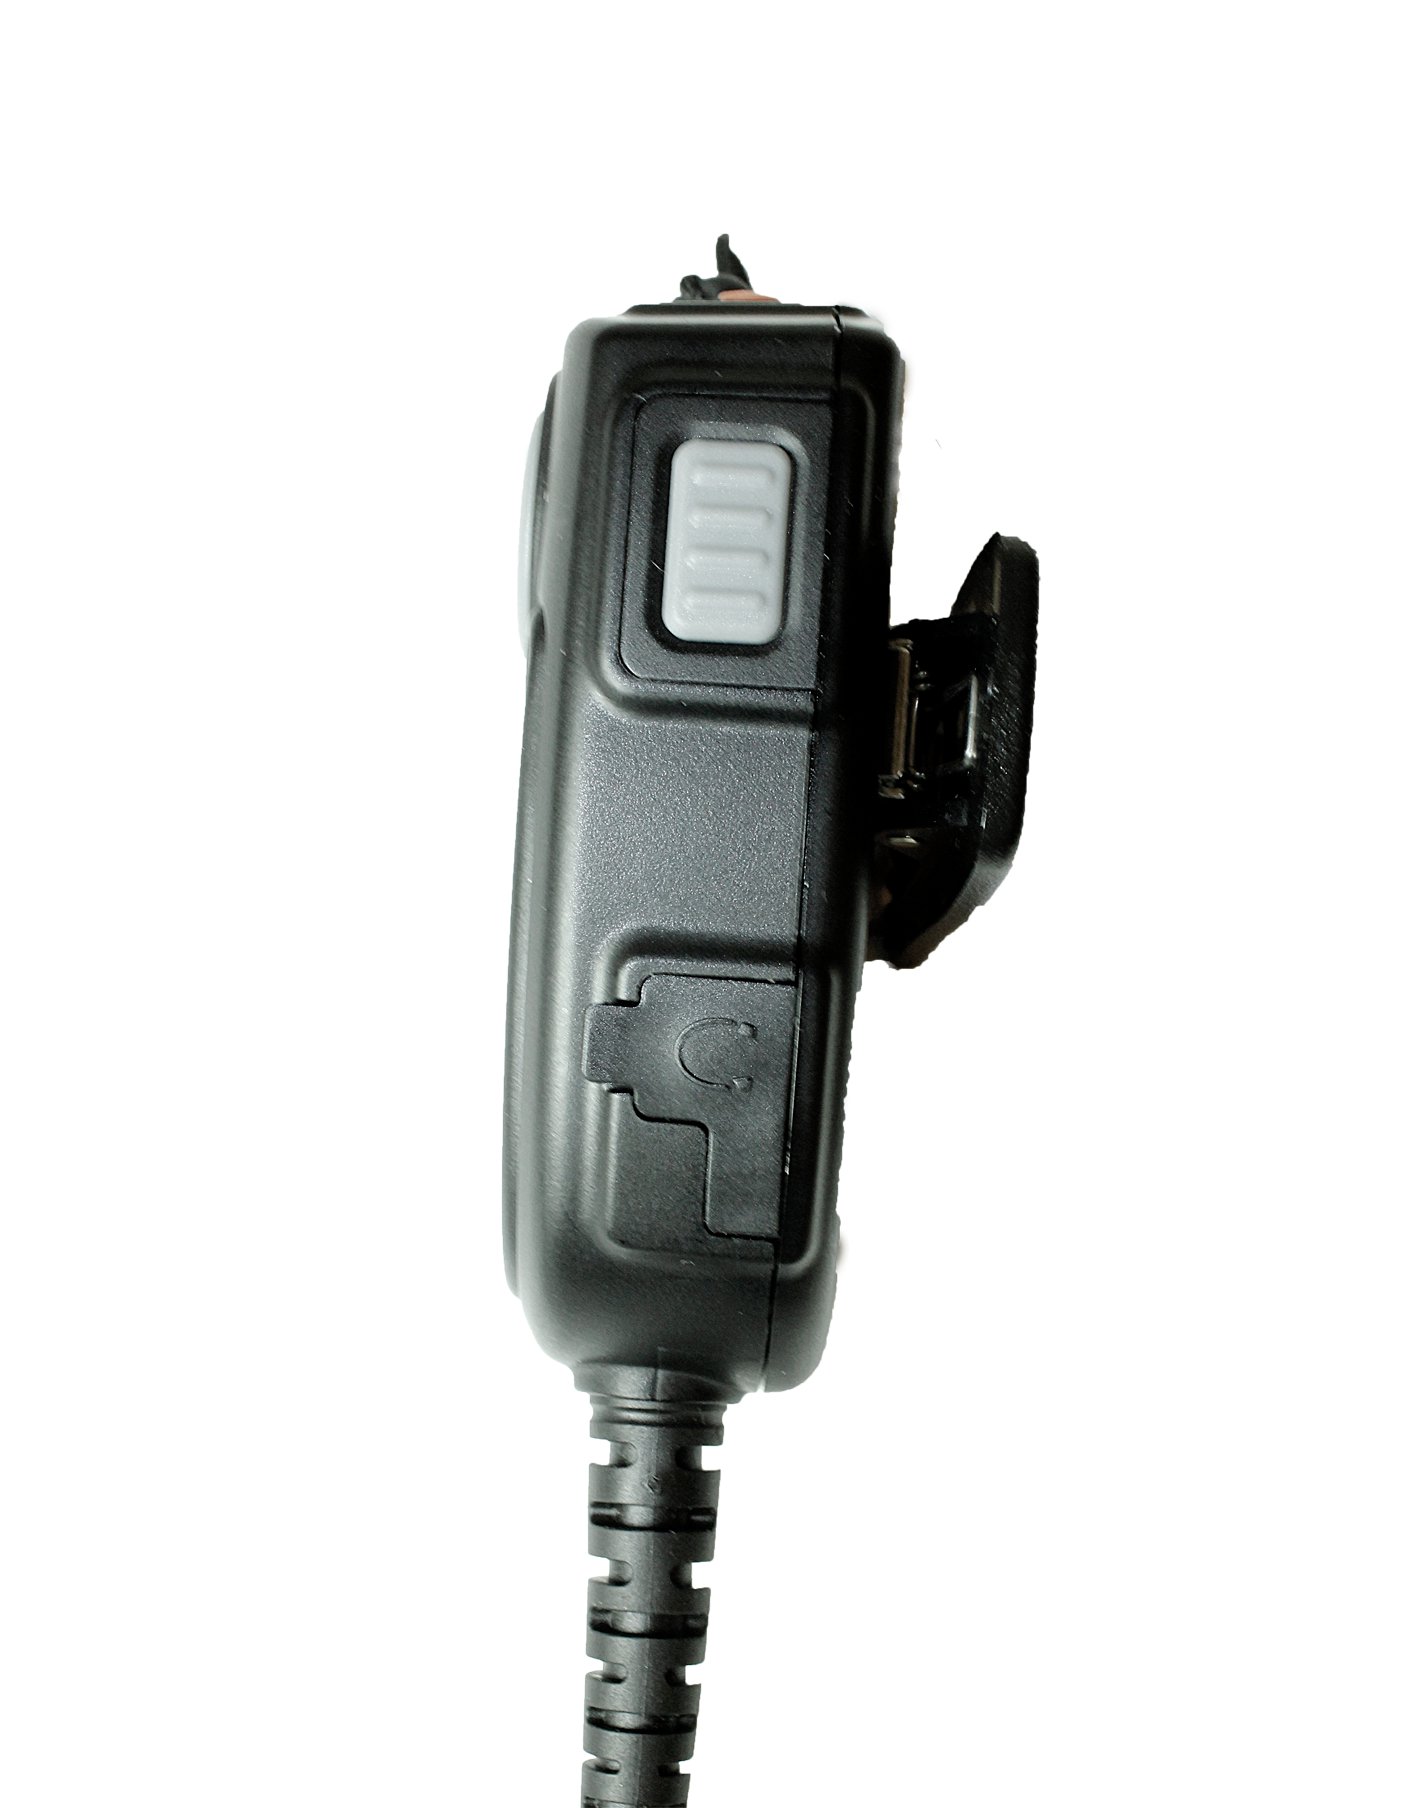 TITAN Lautsprechermikrofon MMW20 mit Nexus 02 und PTT-Modul passend für Motorola MXP600, R7